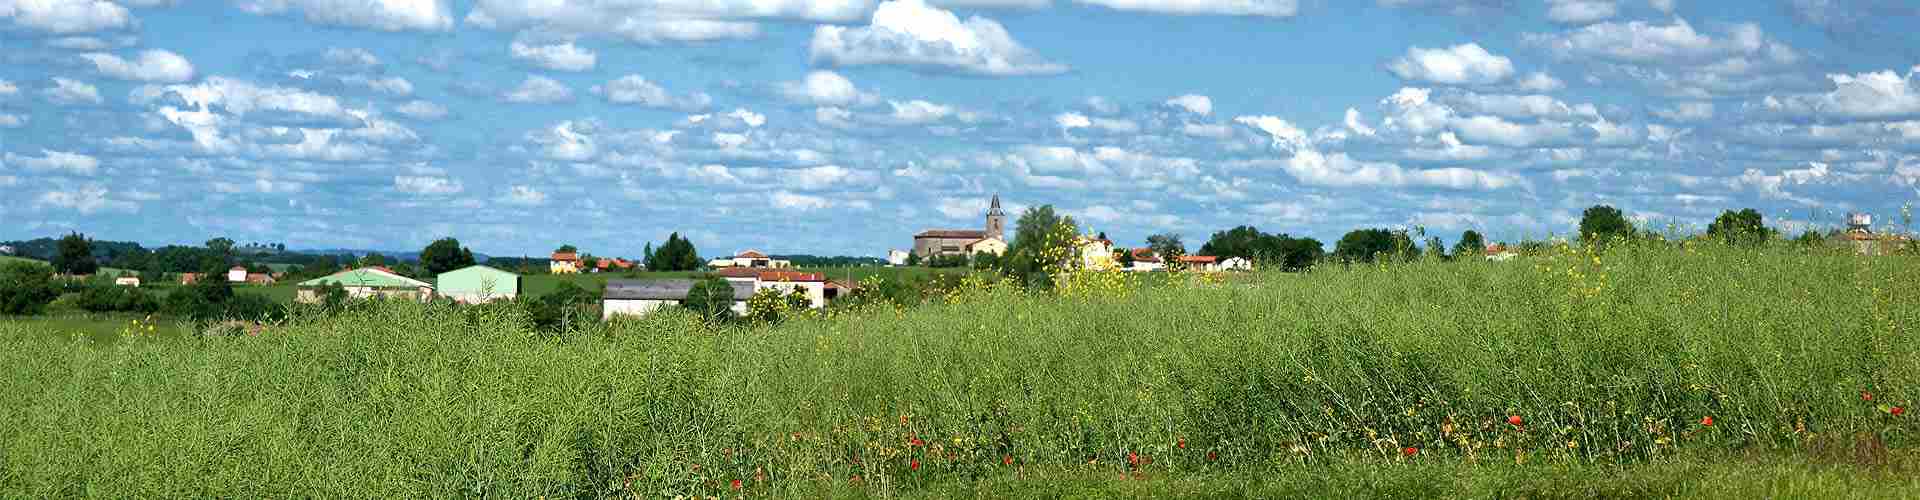 Casas rurales para 4 personas en Asturias
          
          

